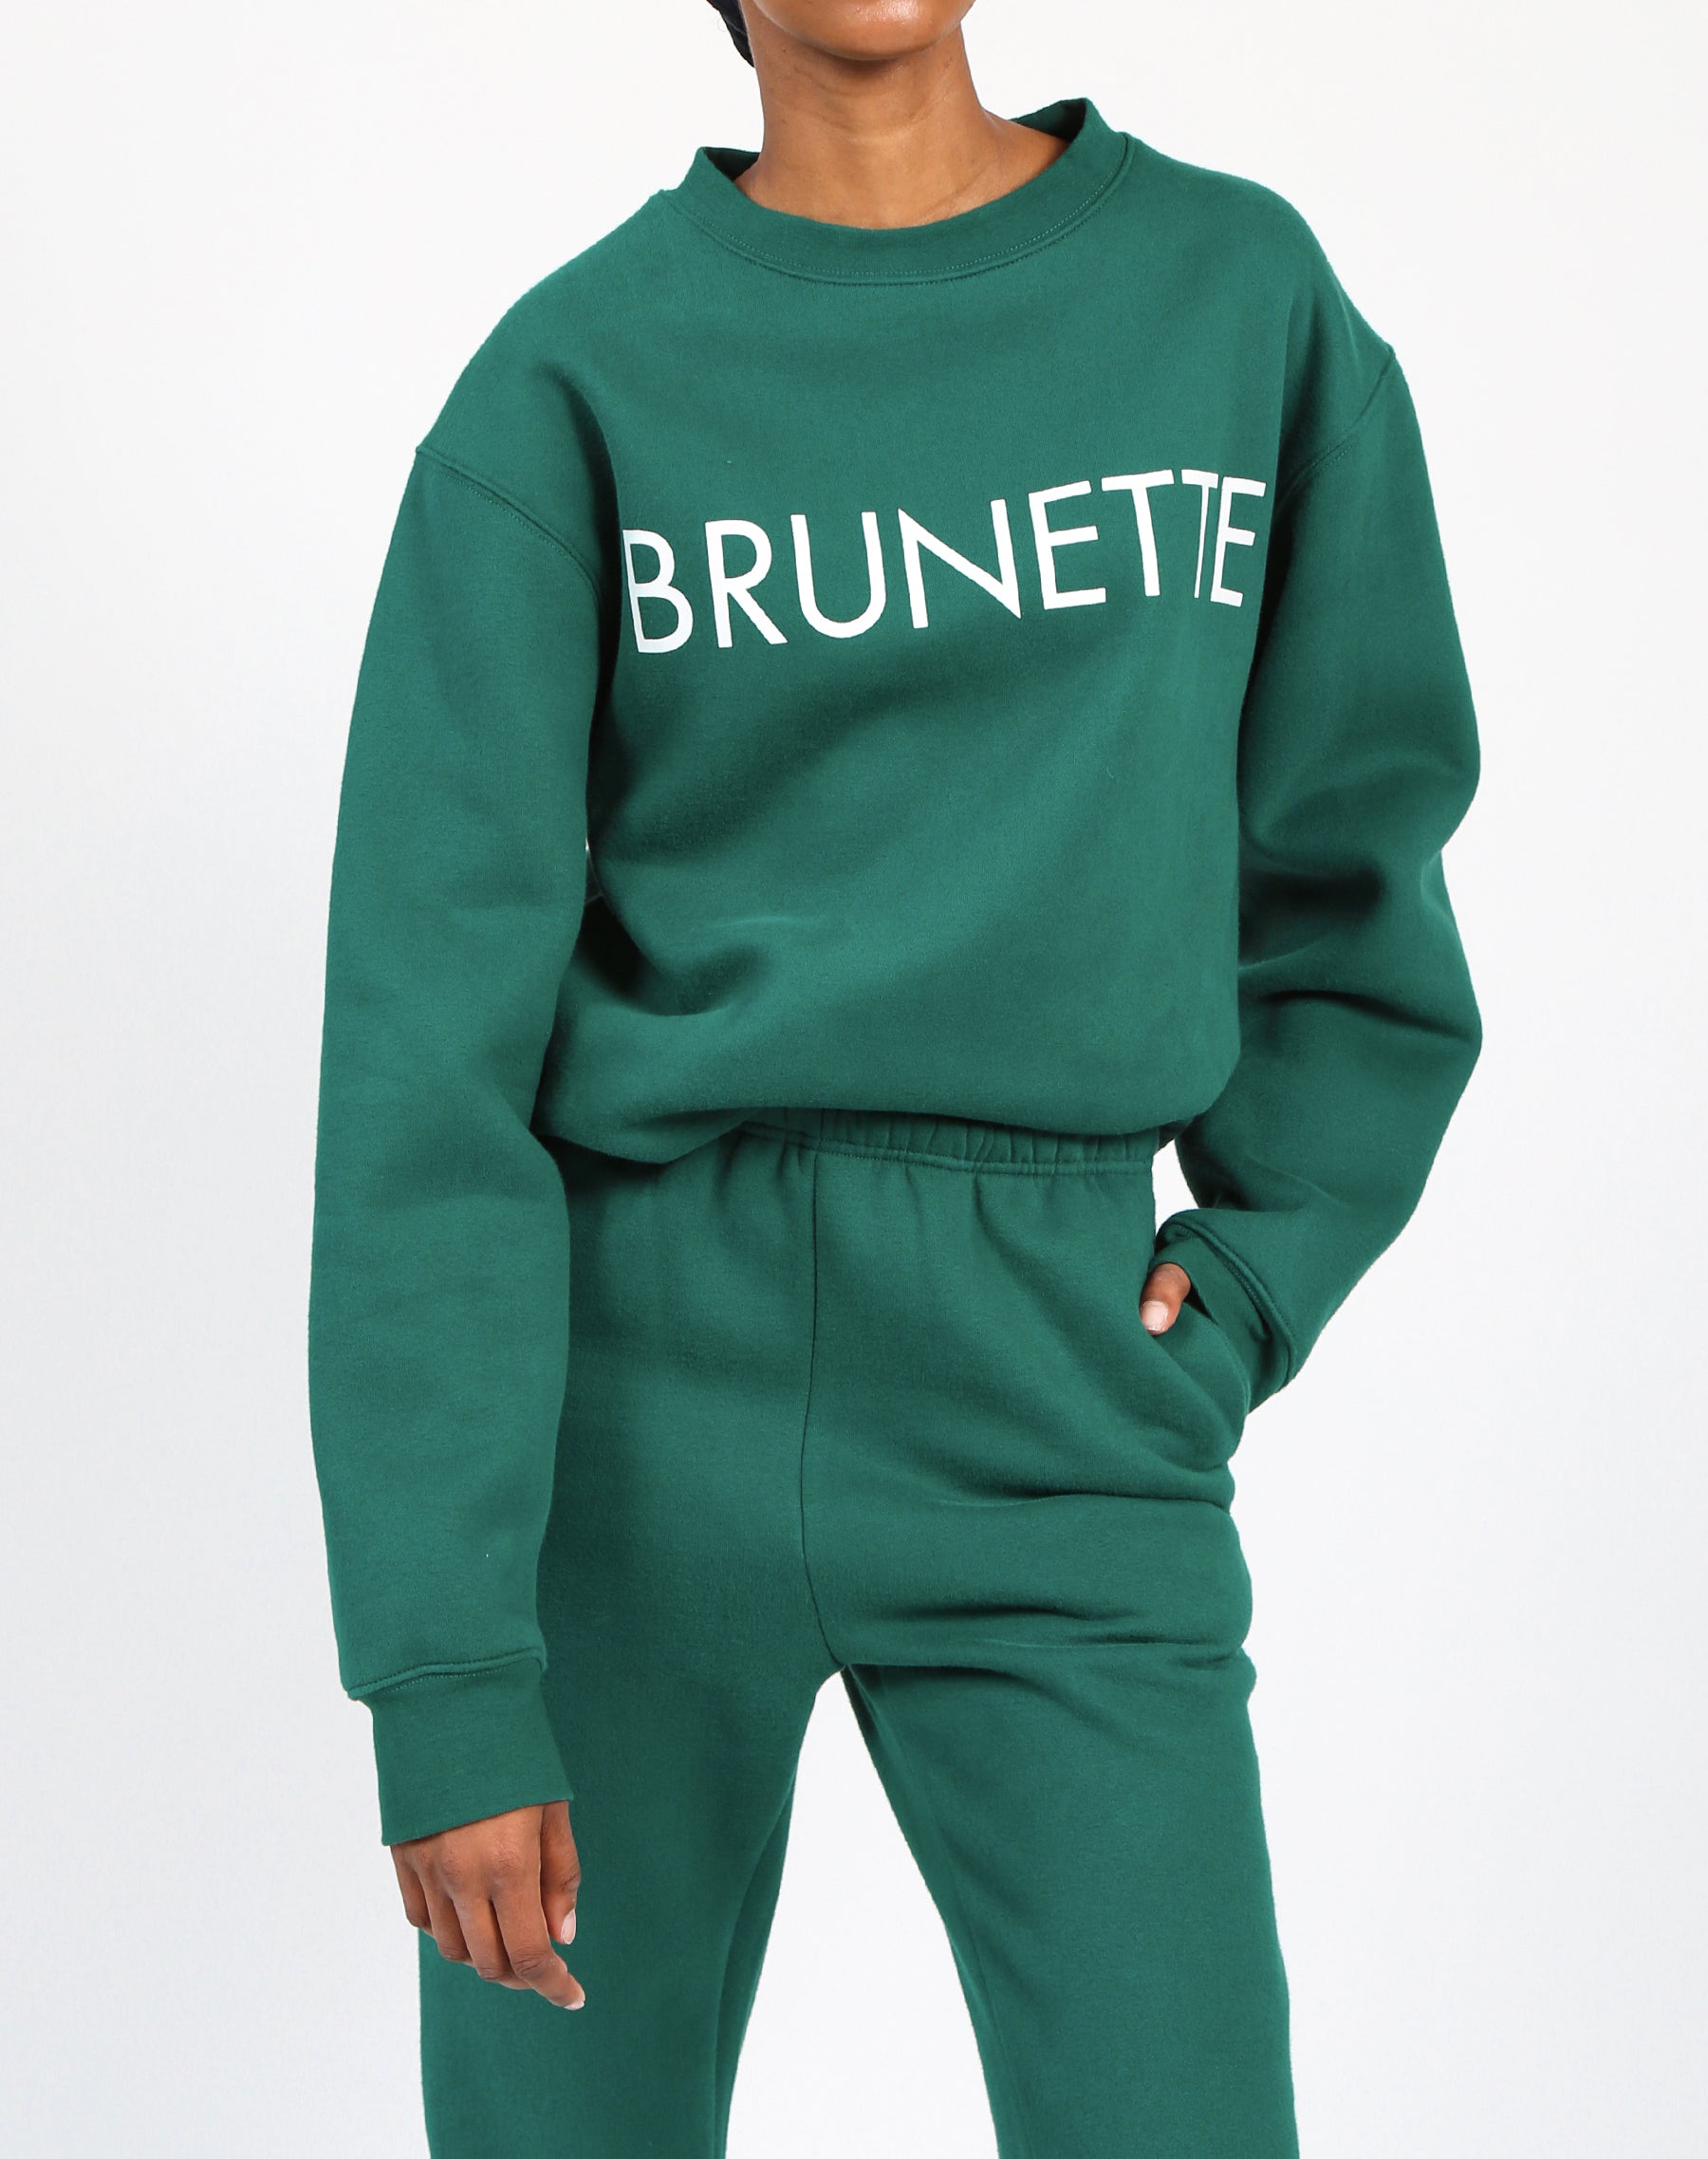 The "BRUNETTE" Classic Crew Neck Sweatshirt | Emerald